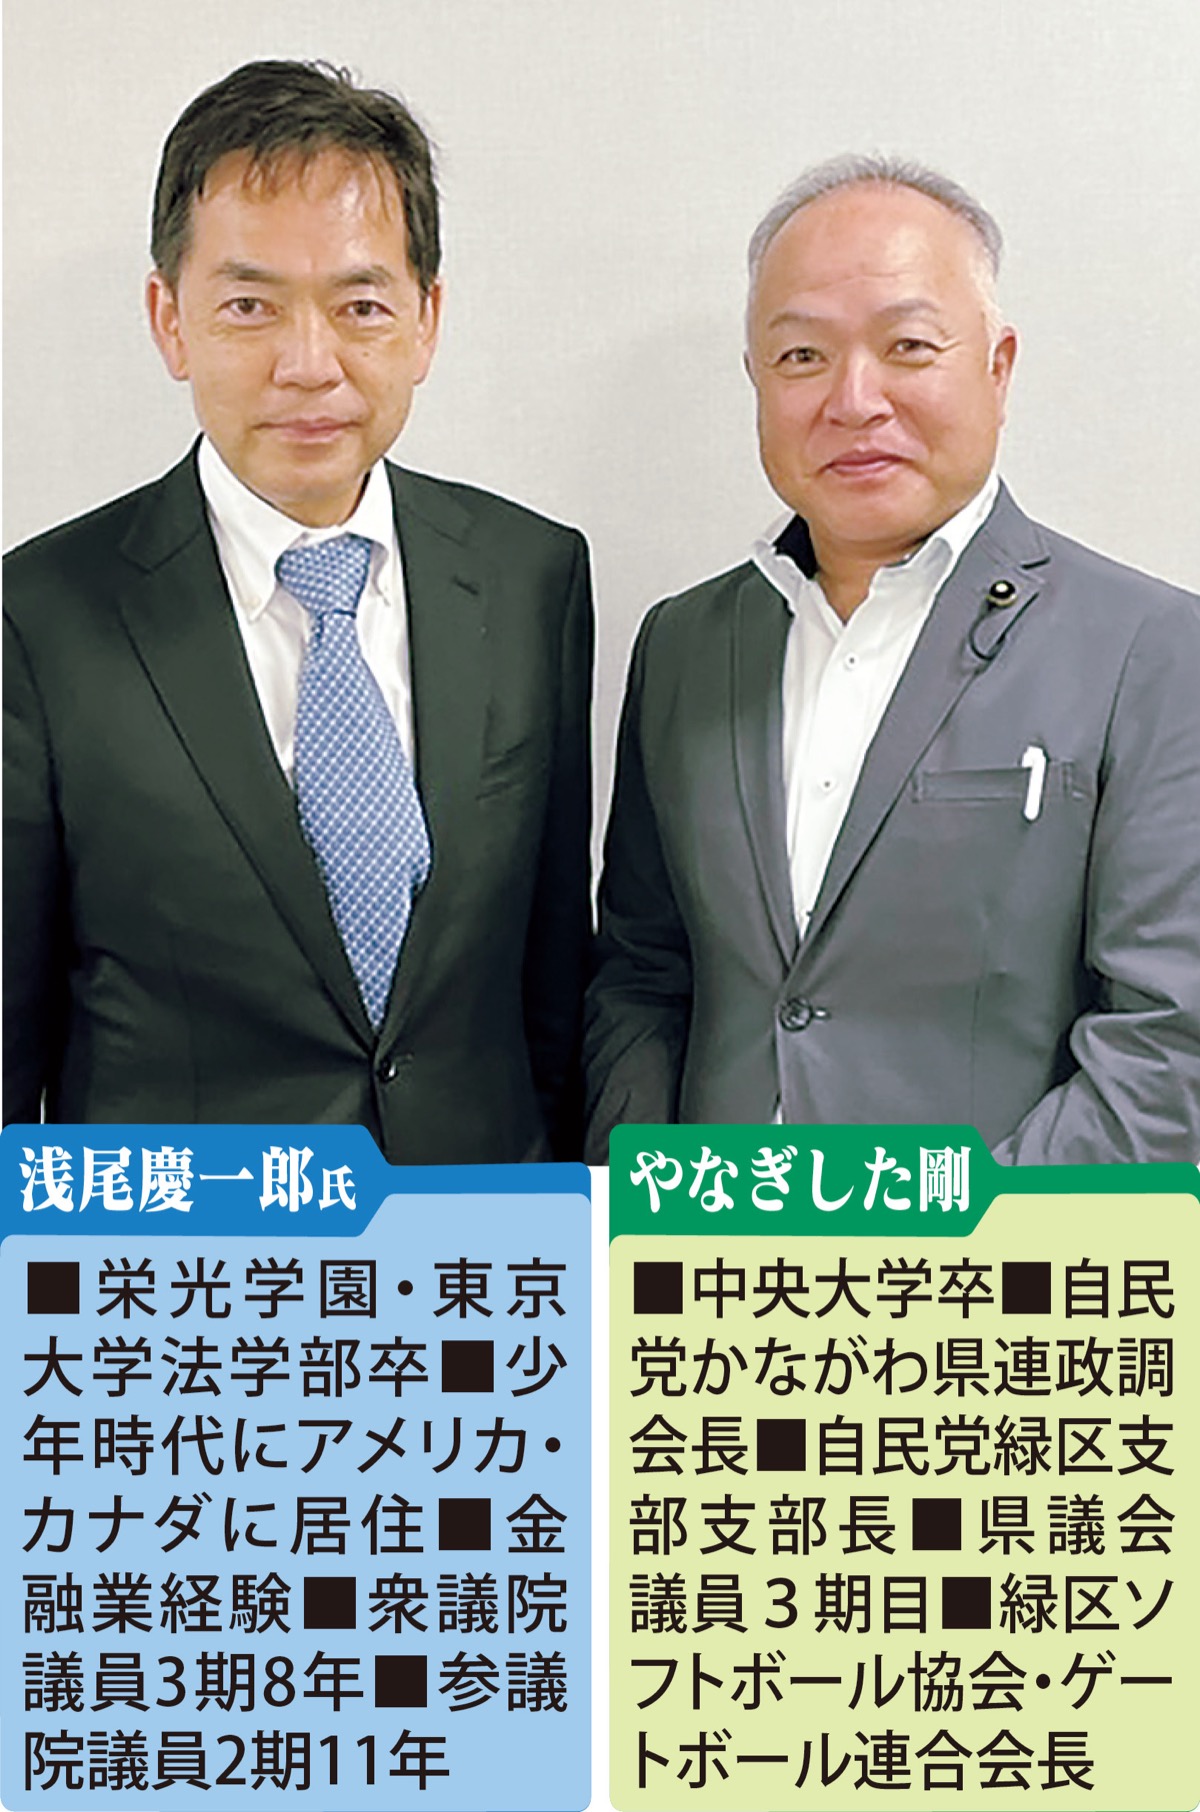 浅尾慶一郎氏と、国と県の連携・経済政策を語る 県議会議員 自民党 やなぎした剛